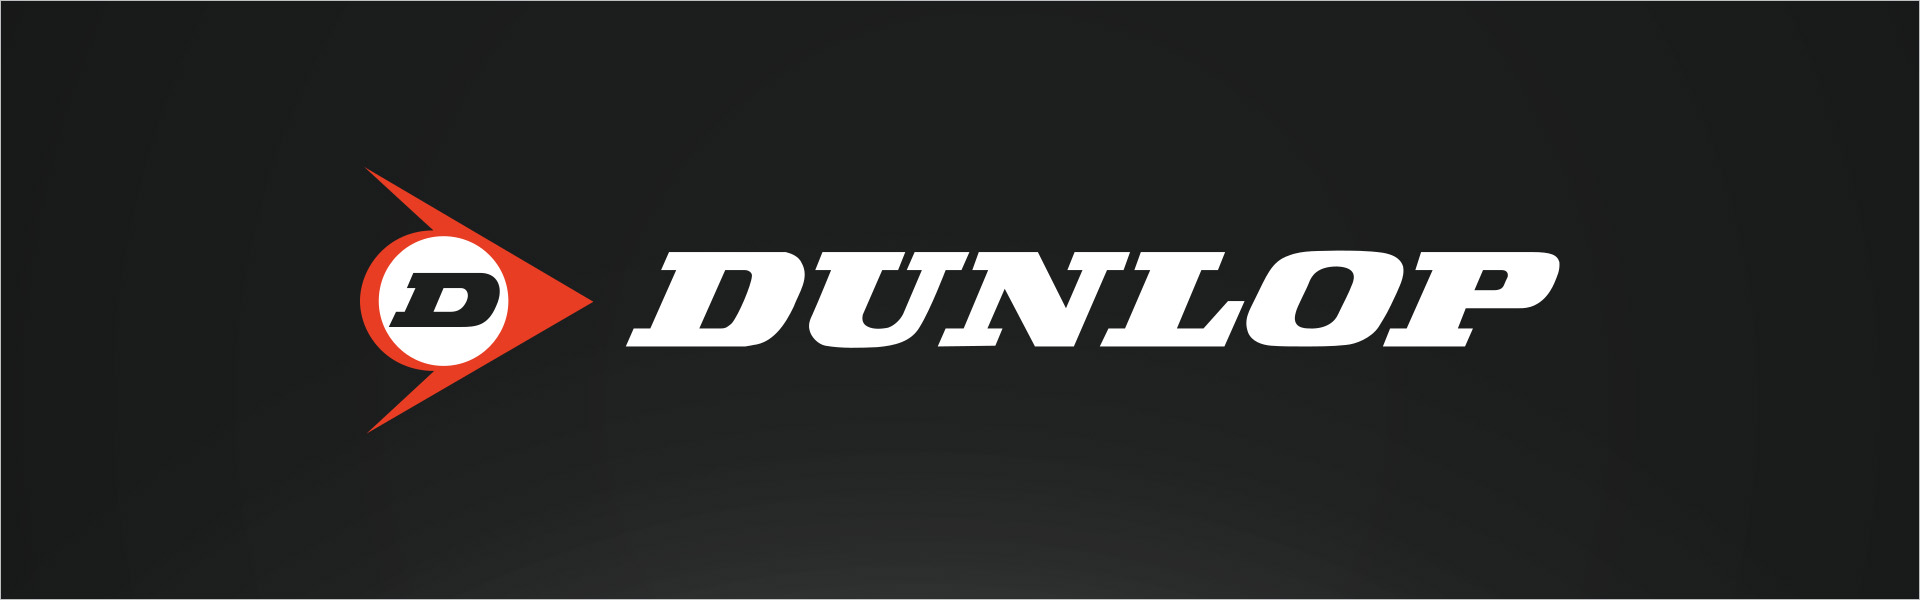 Dunlop SP STREETRESPONSE 2 175/65R14 86 T XL Dunlop